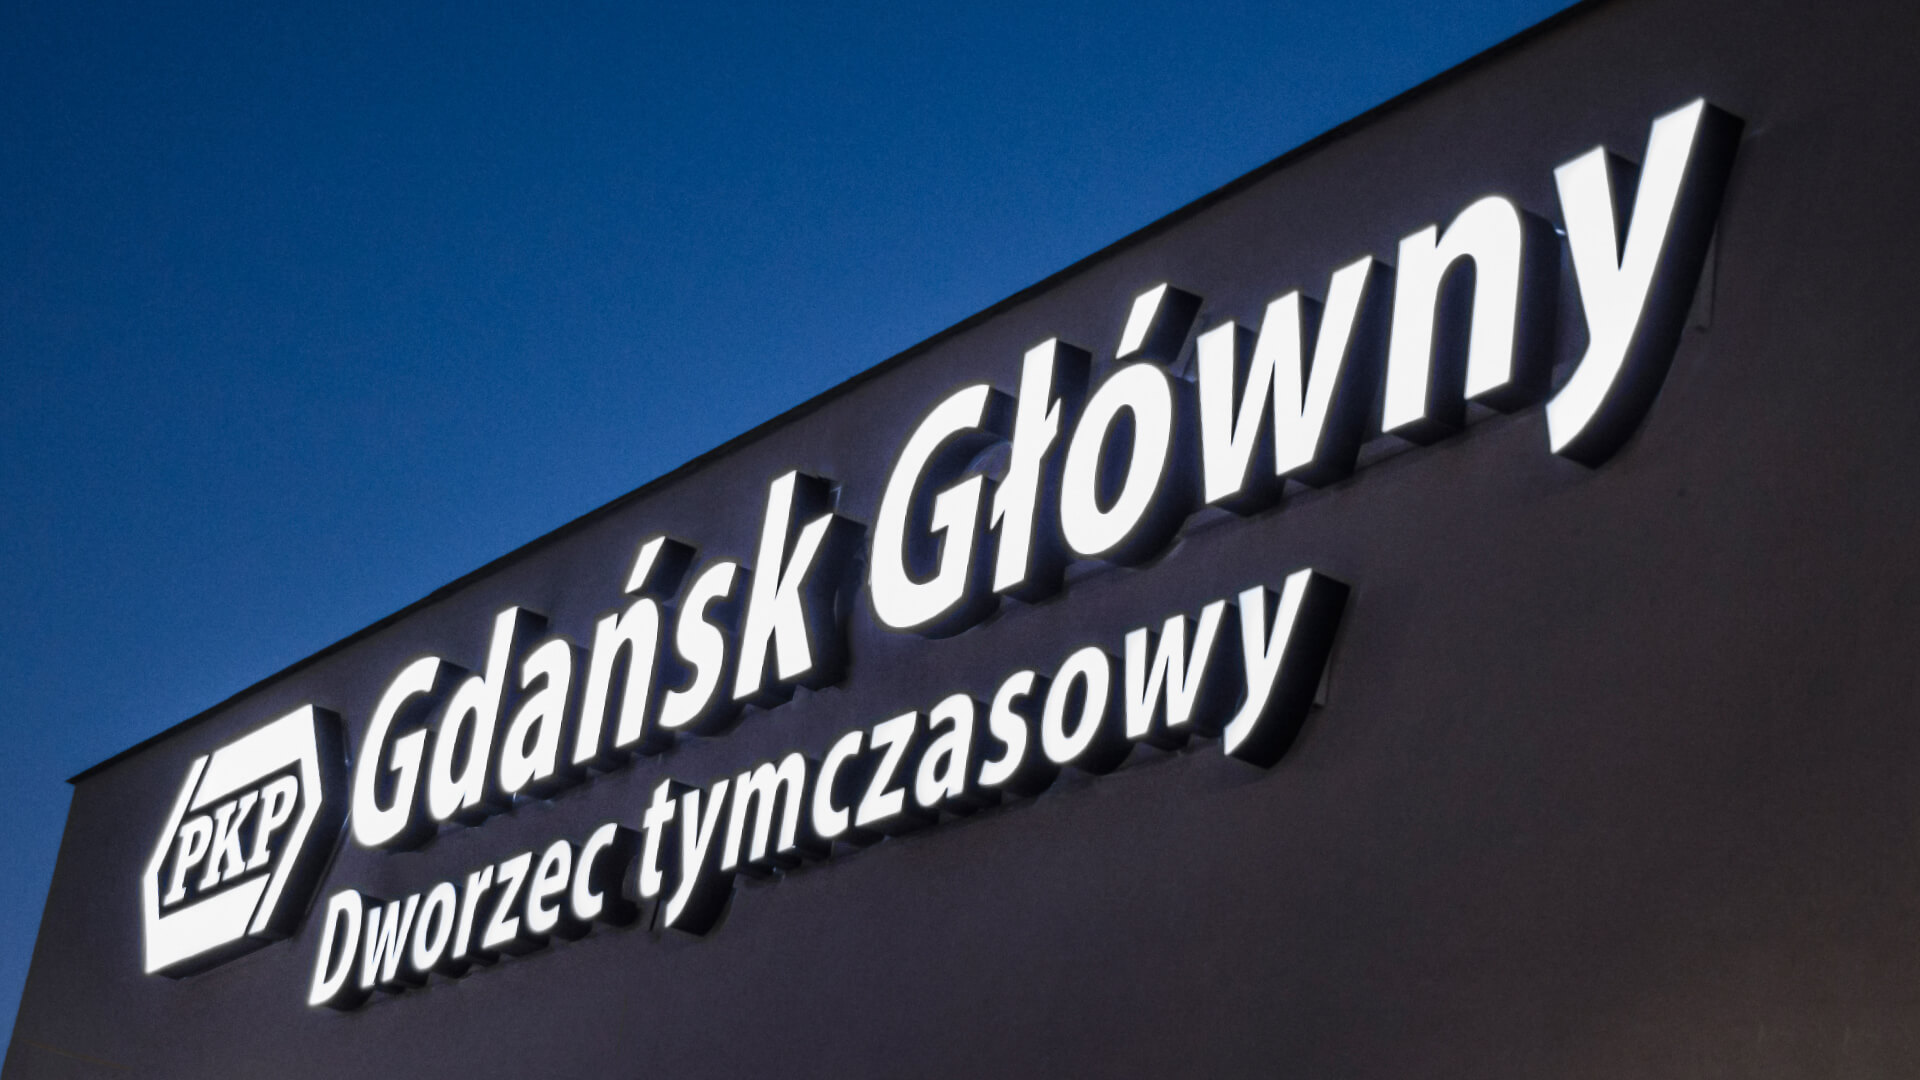 Gdansk Gdansk glony principal punto de la estación temporal - gdansk-dworzec-timporowy-cartas-bajo-la-luz-llevada-cartas-sobre-la-entrada-cartas-blancas-cartas-espaciales-en-la-pared-dworzec-pkp-gdansk-glowny